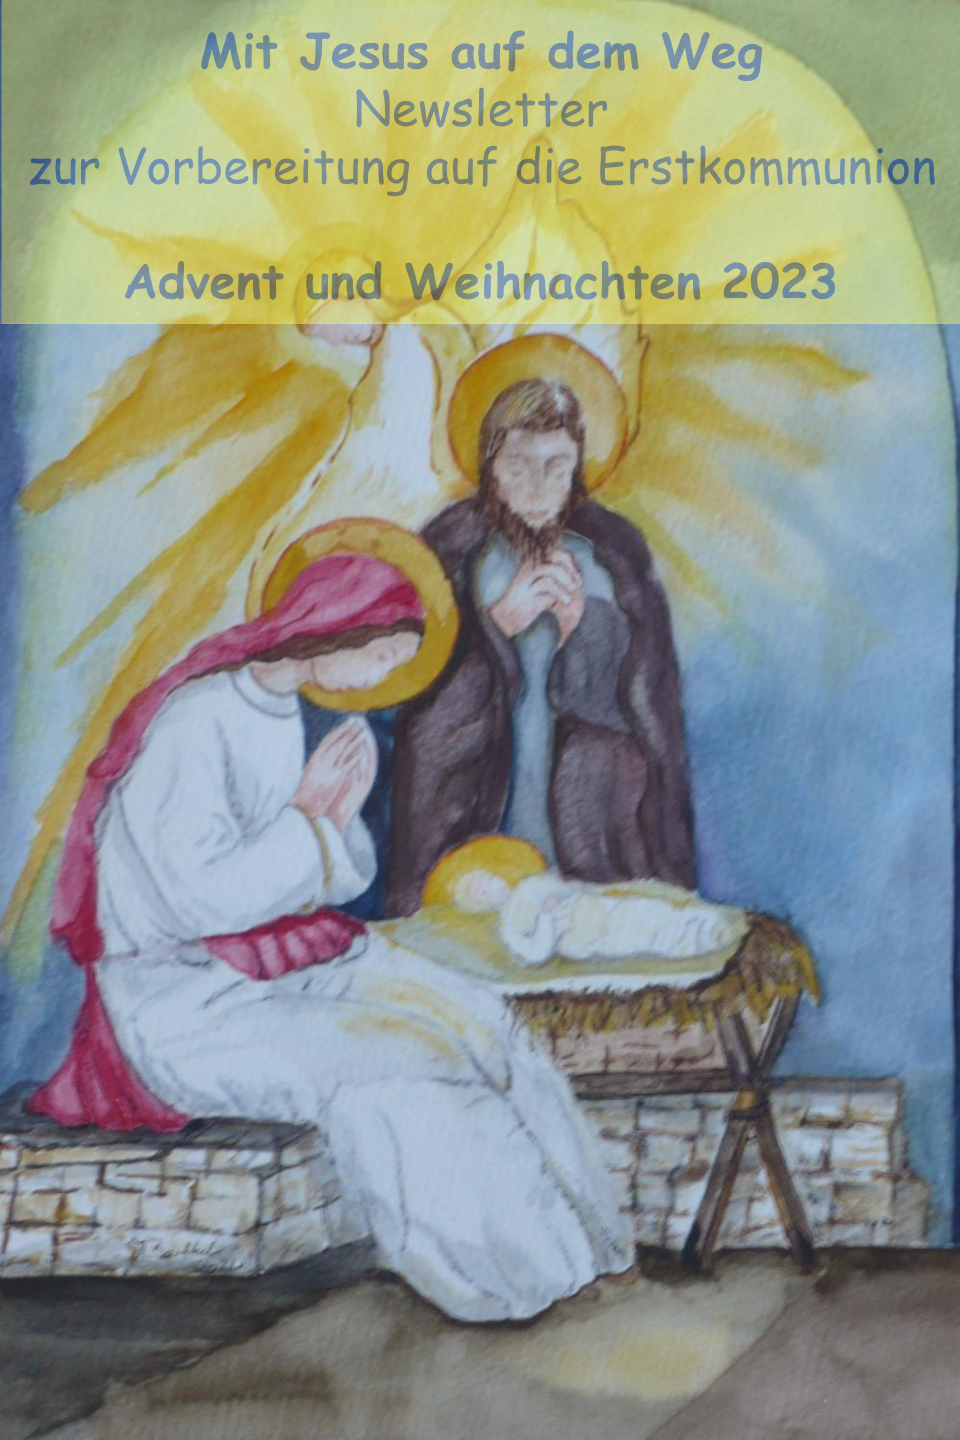 Erstlommunion 2023 Newsletter Dezember Advent und Weihnachten VSB